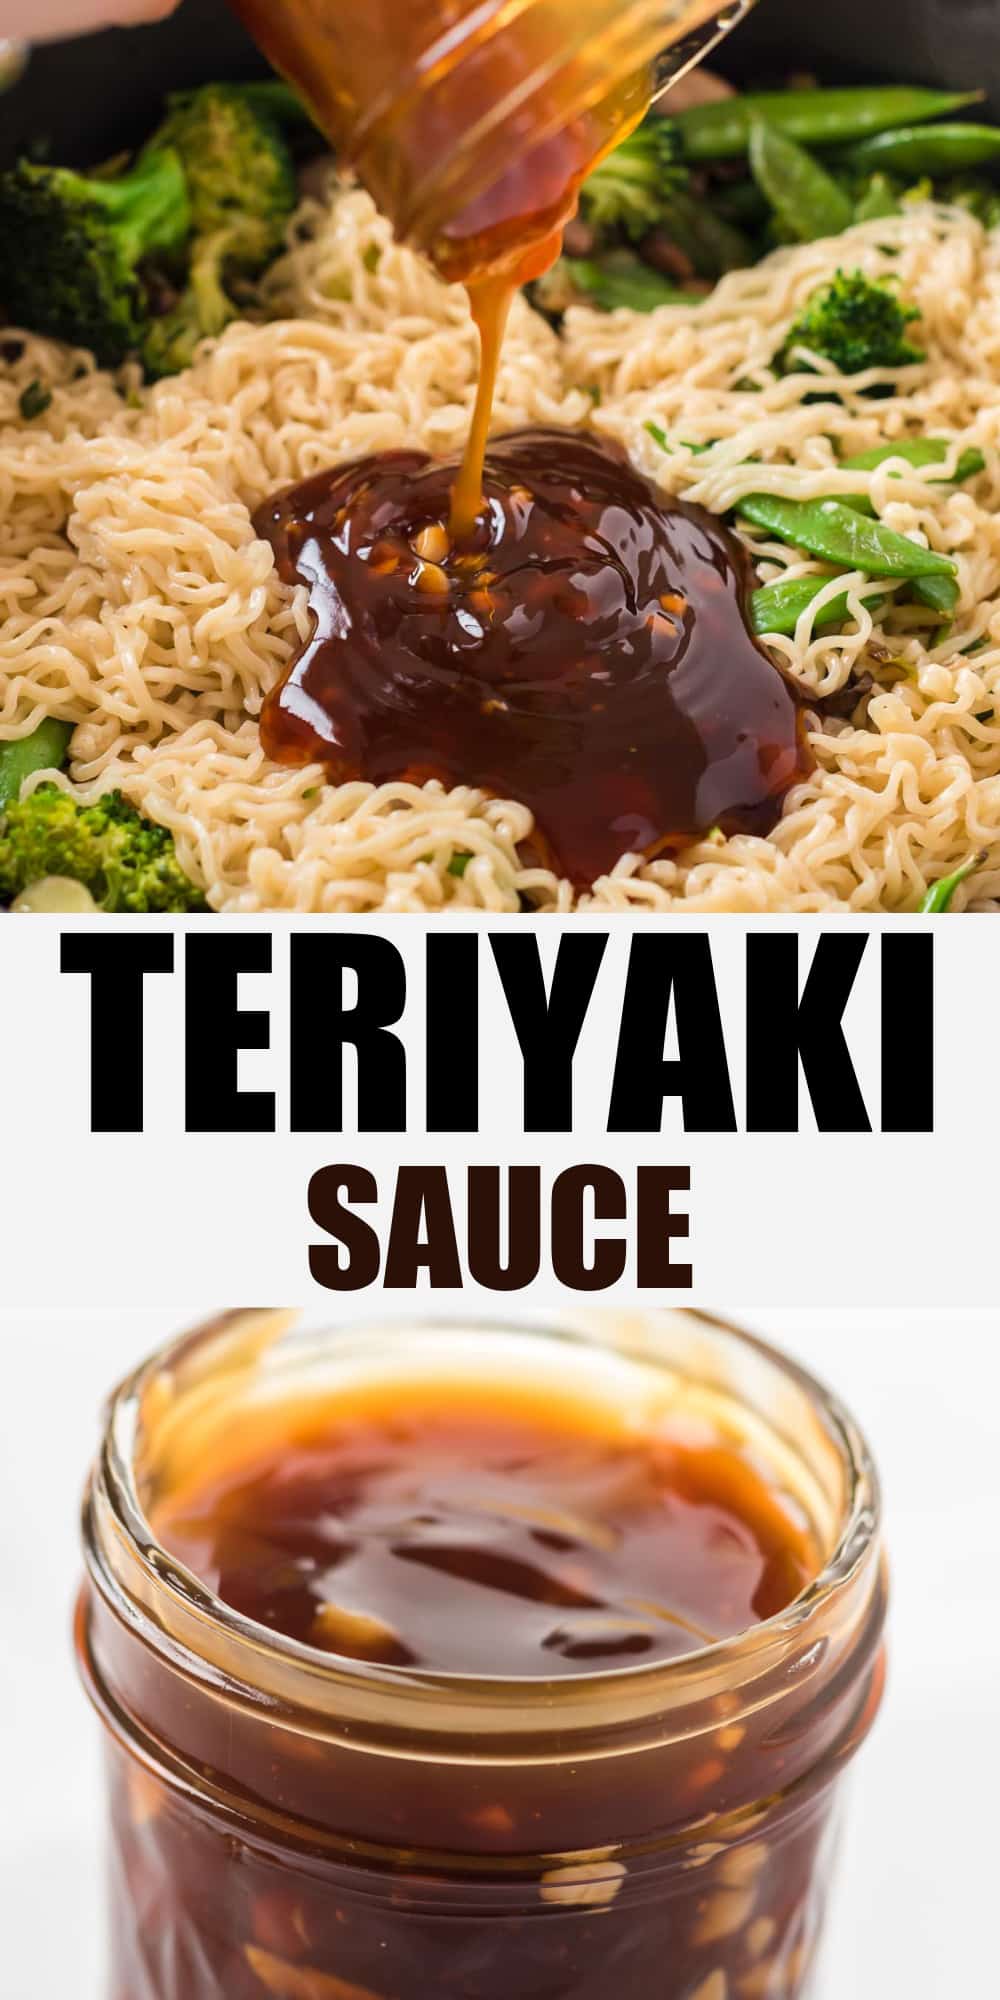 image with text "teriyaki sauce"